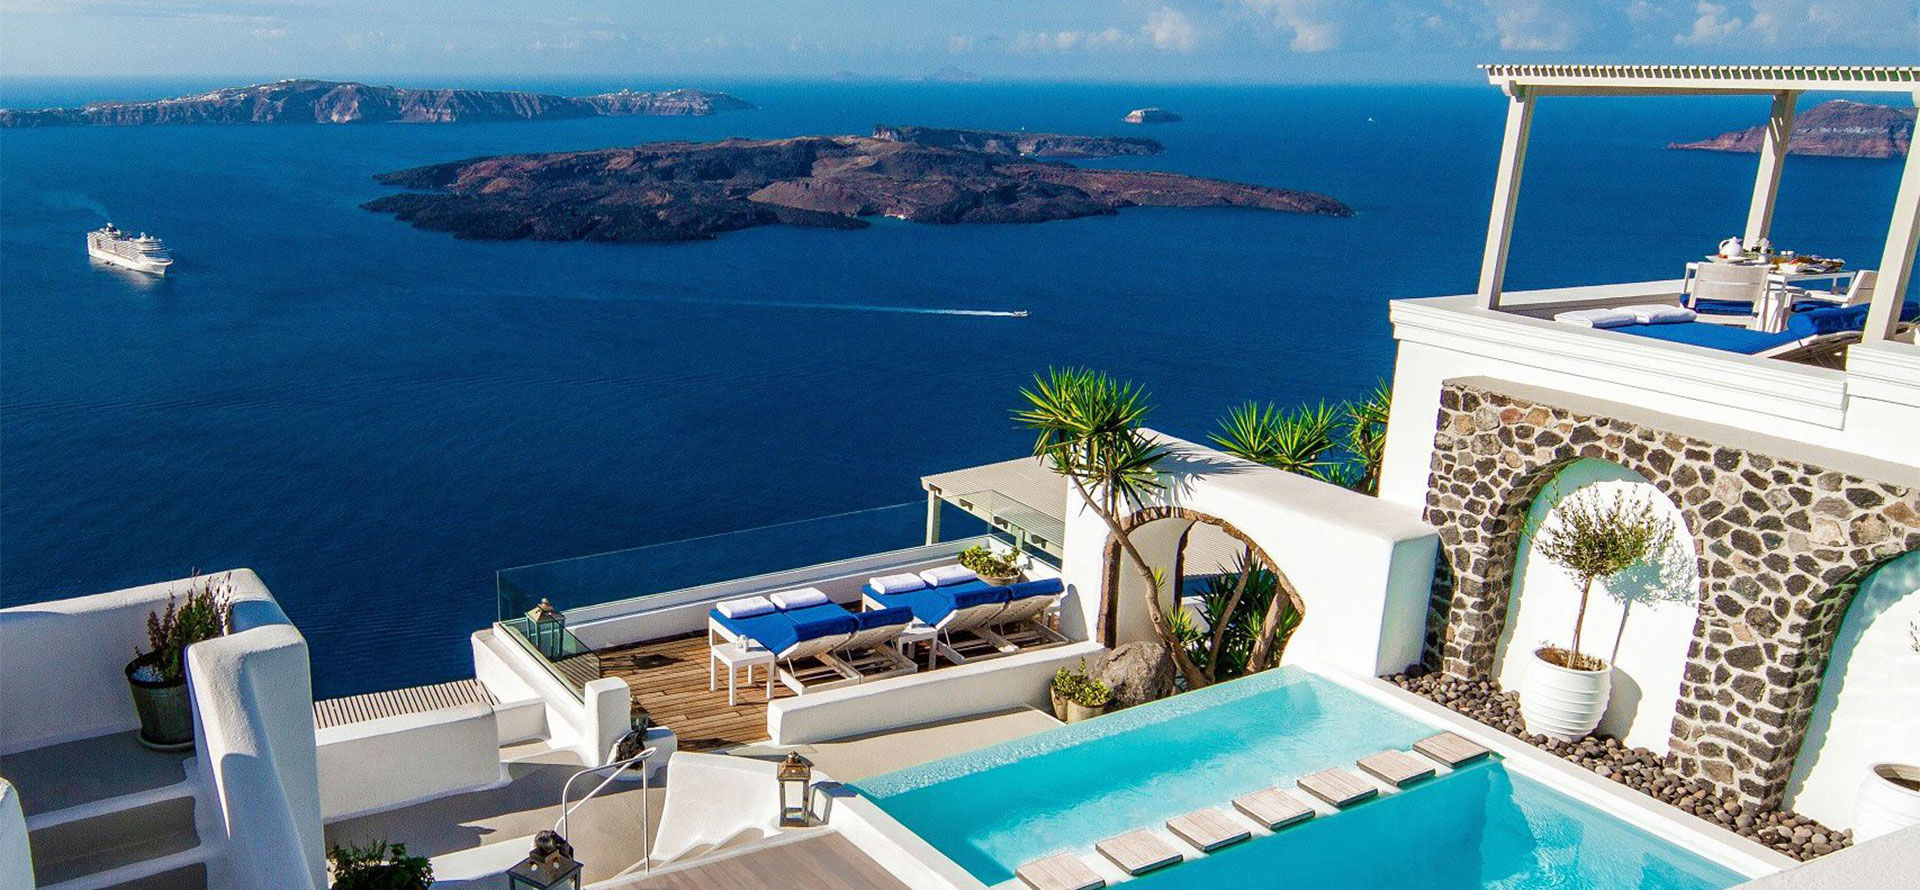 Santorini greece all inclusive resorts.